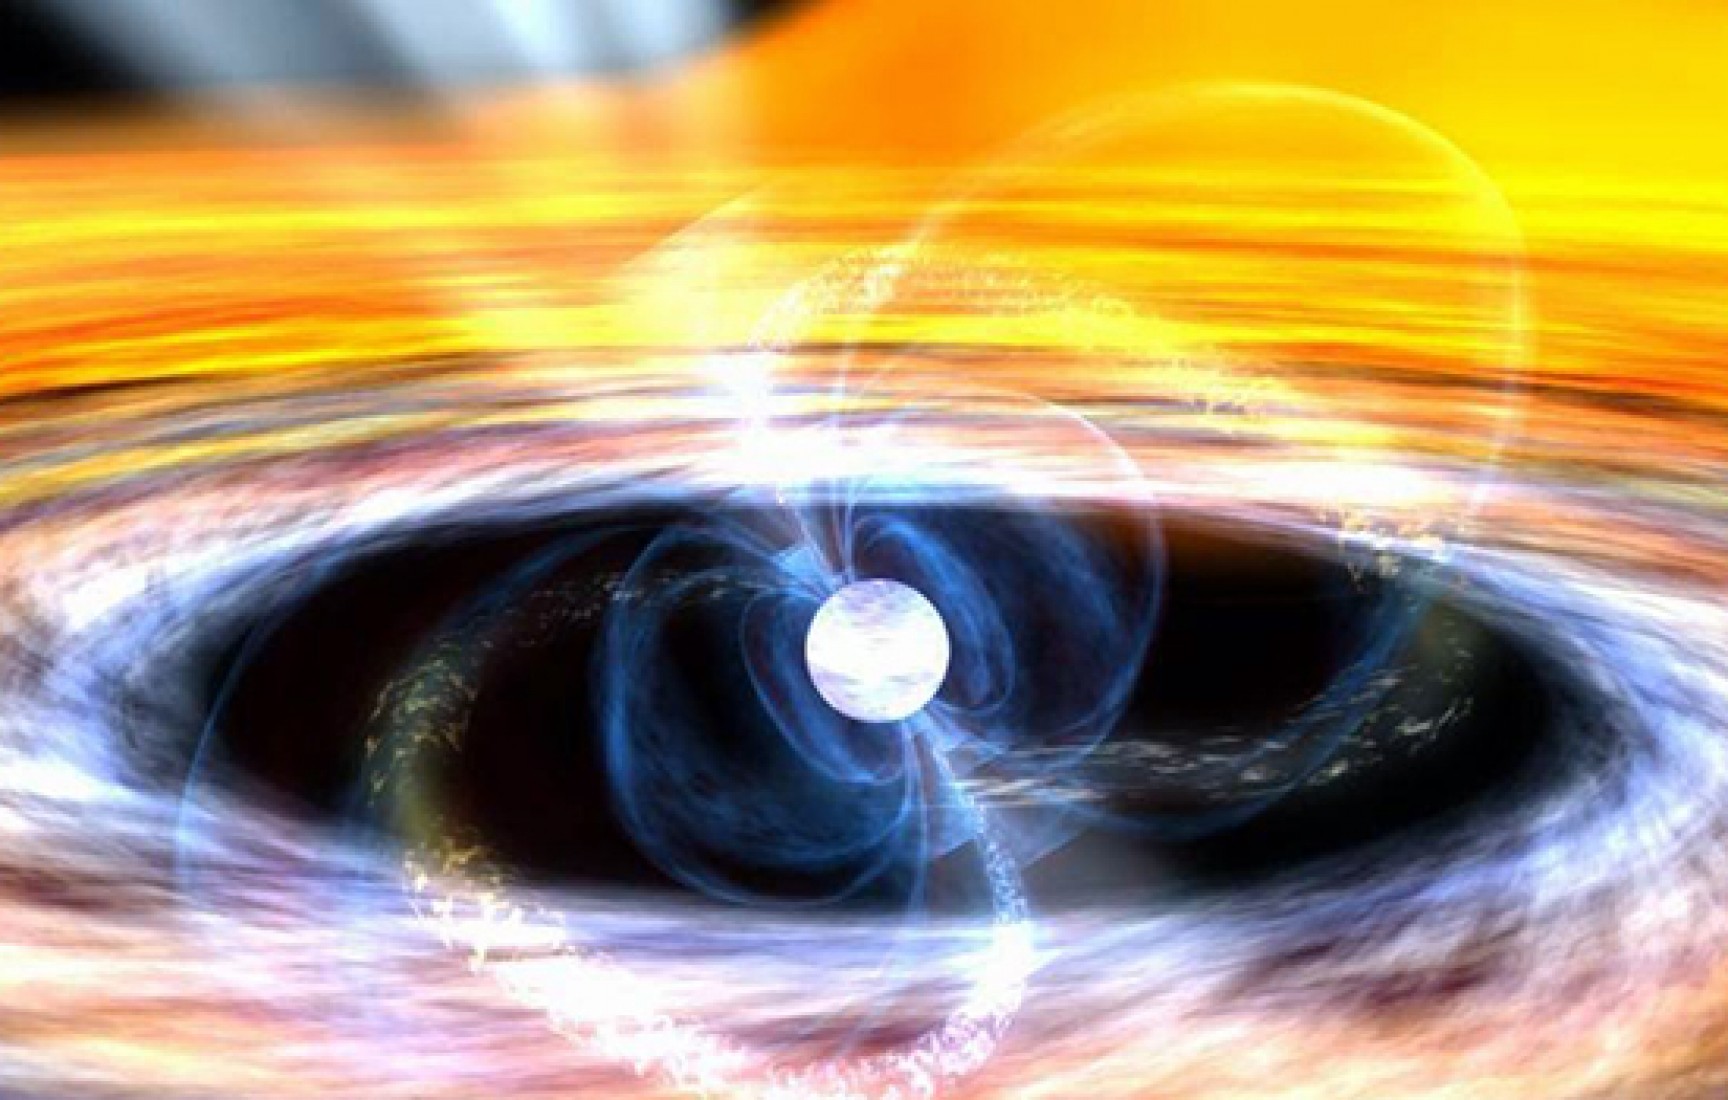 Atomların Çökmesi ile Oluşan Nötron Yıldızları